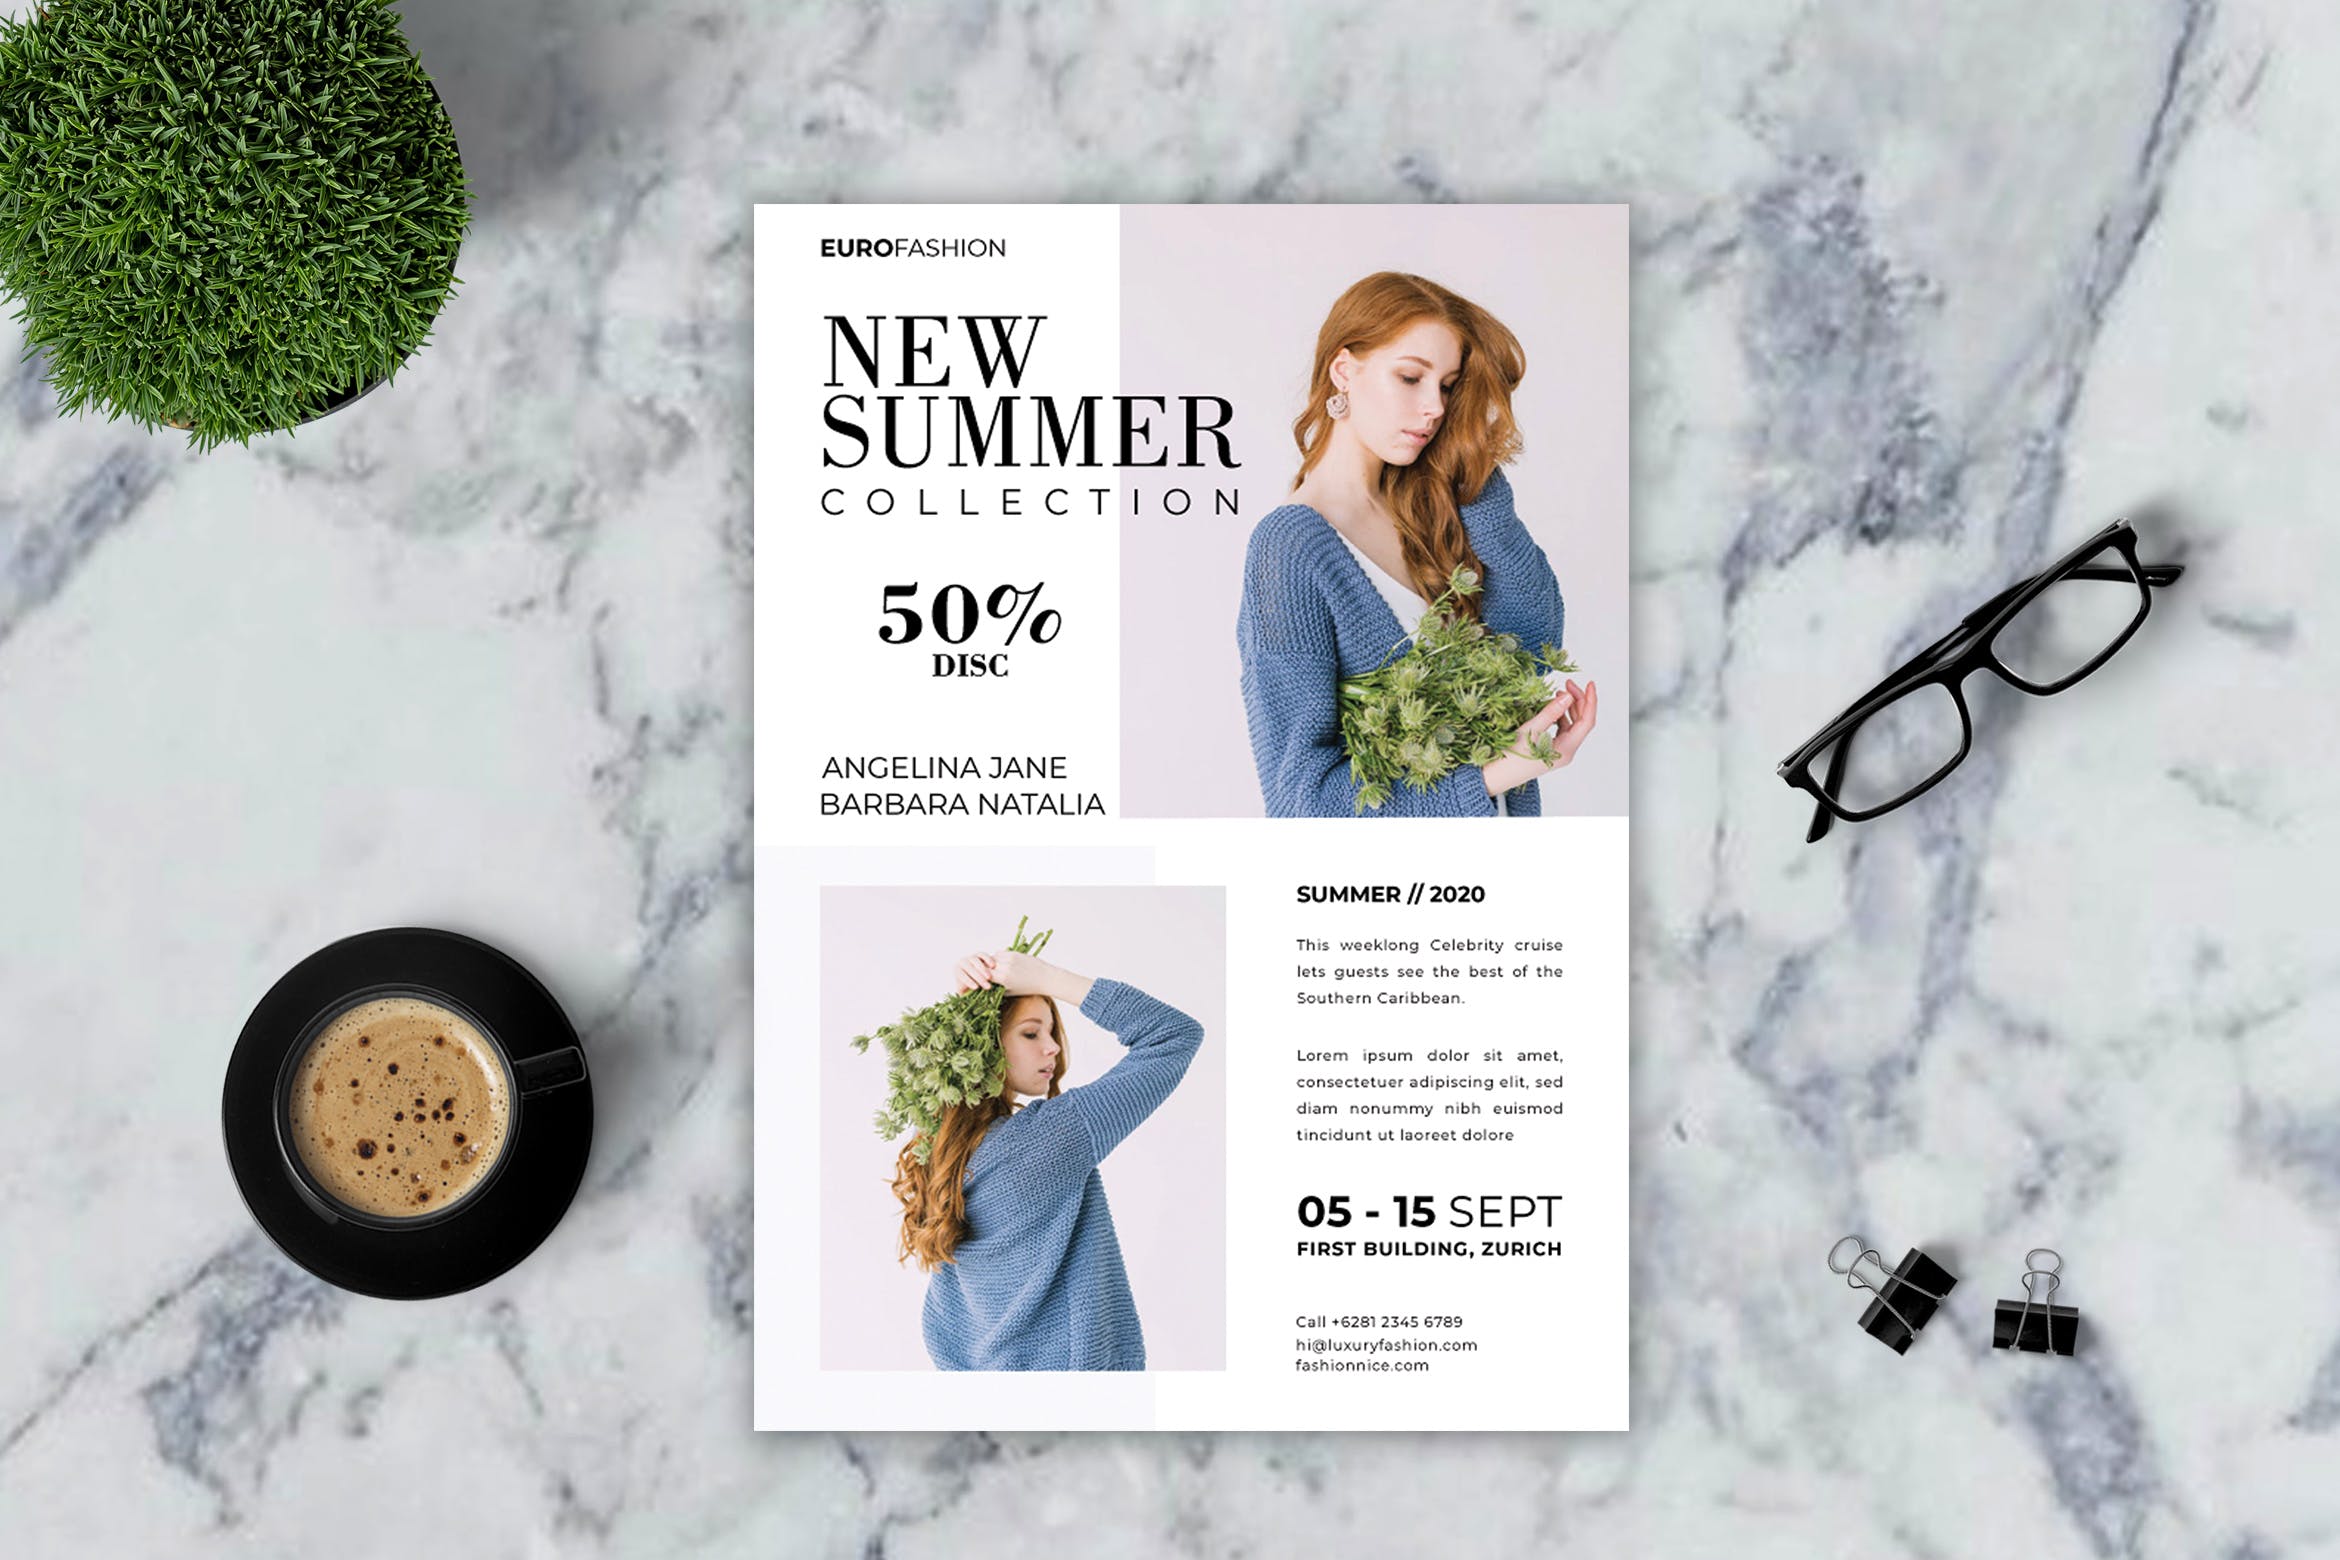 高端女装品牌店促销传单设计模板v3 Fashion Flyer – Vol. 3插图